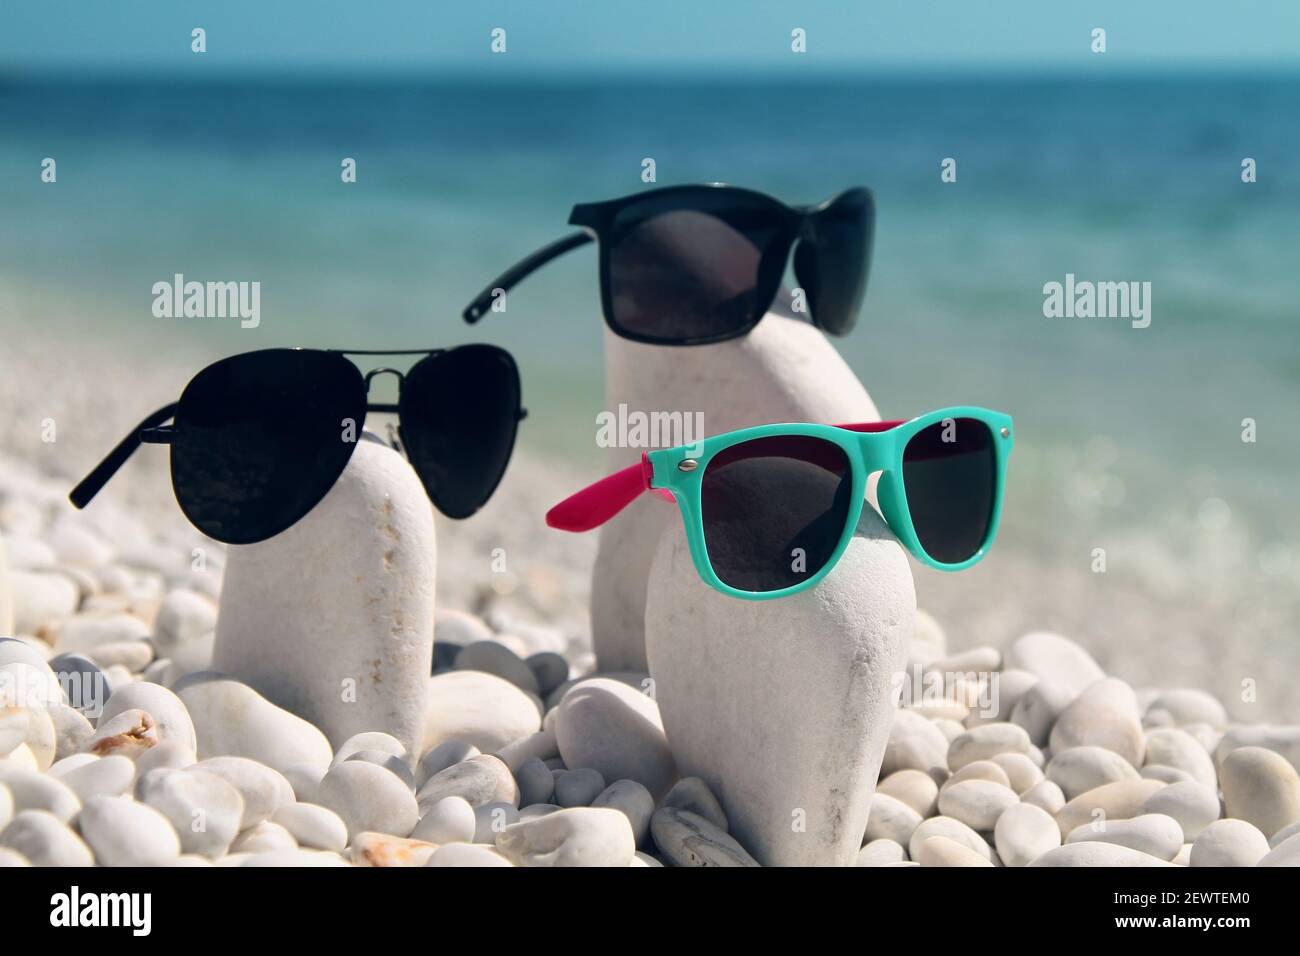 Composition estivale amusante de pierres de galet blanc et de lunettes de soleil imitant les visages des gens et créant une « famille ». Marina di Pisa. Italie. Banque D'Images